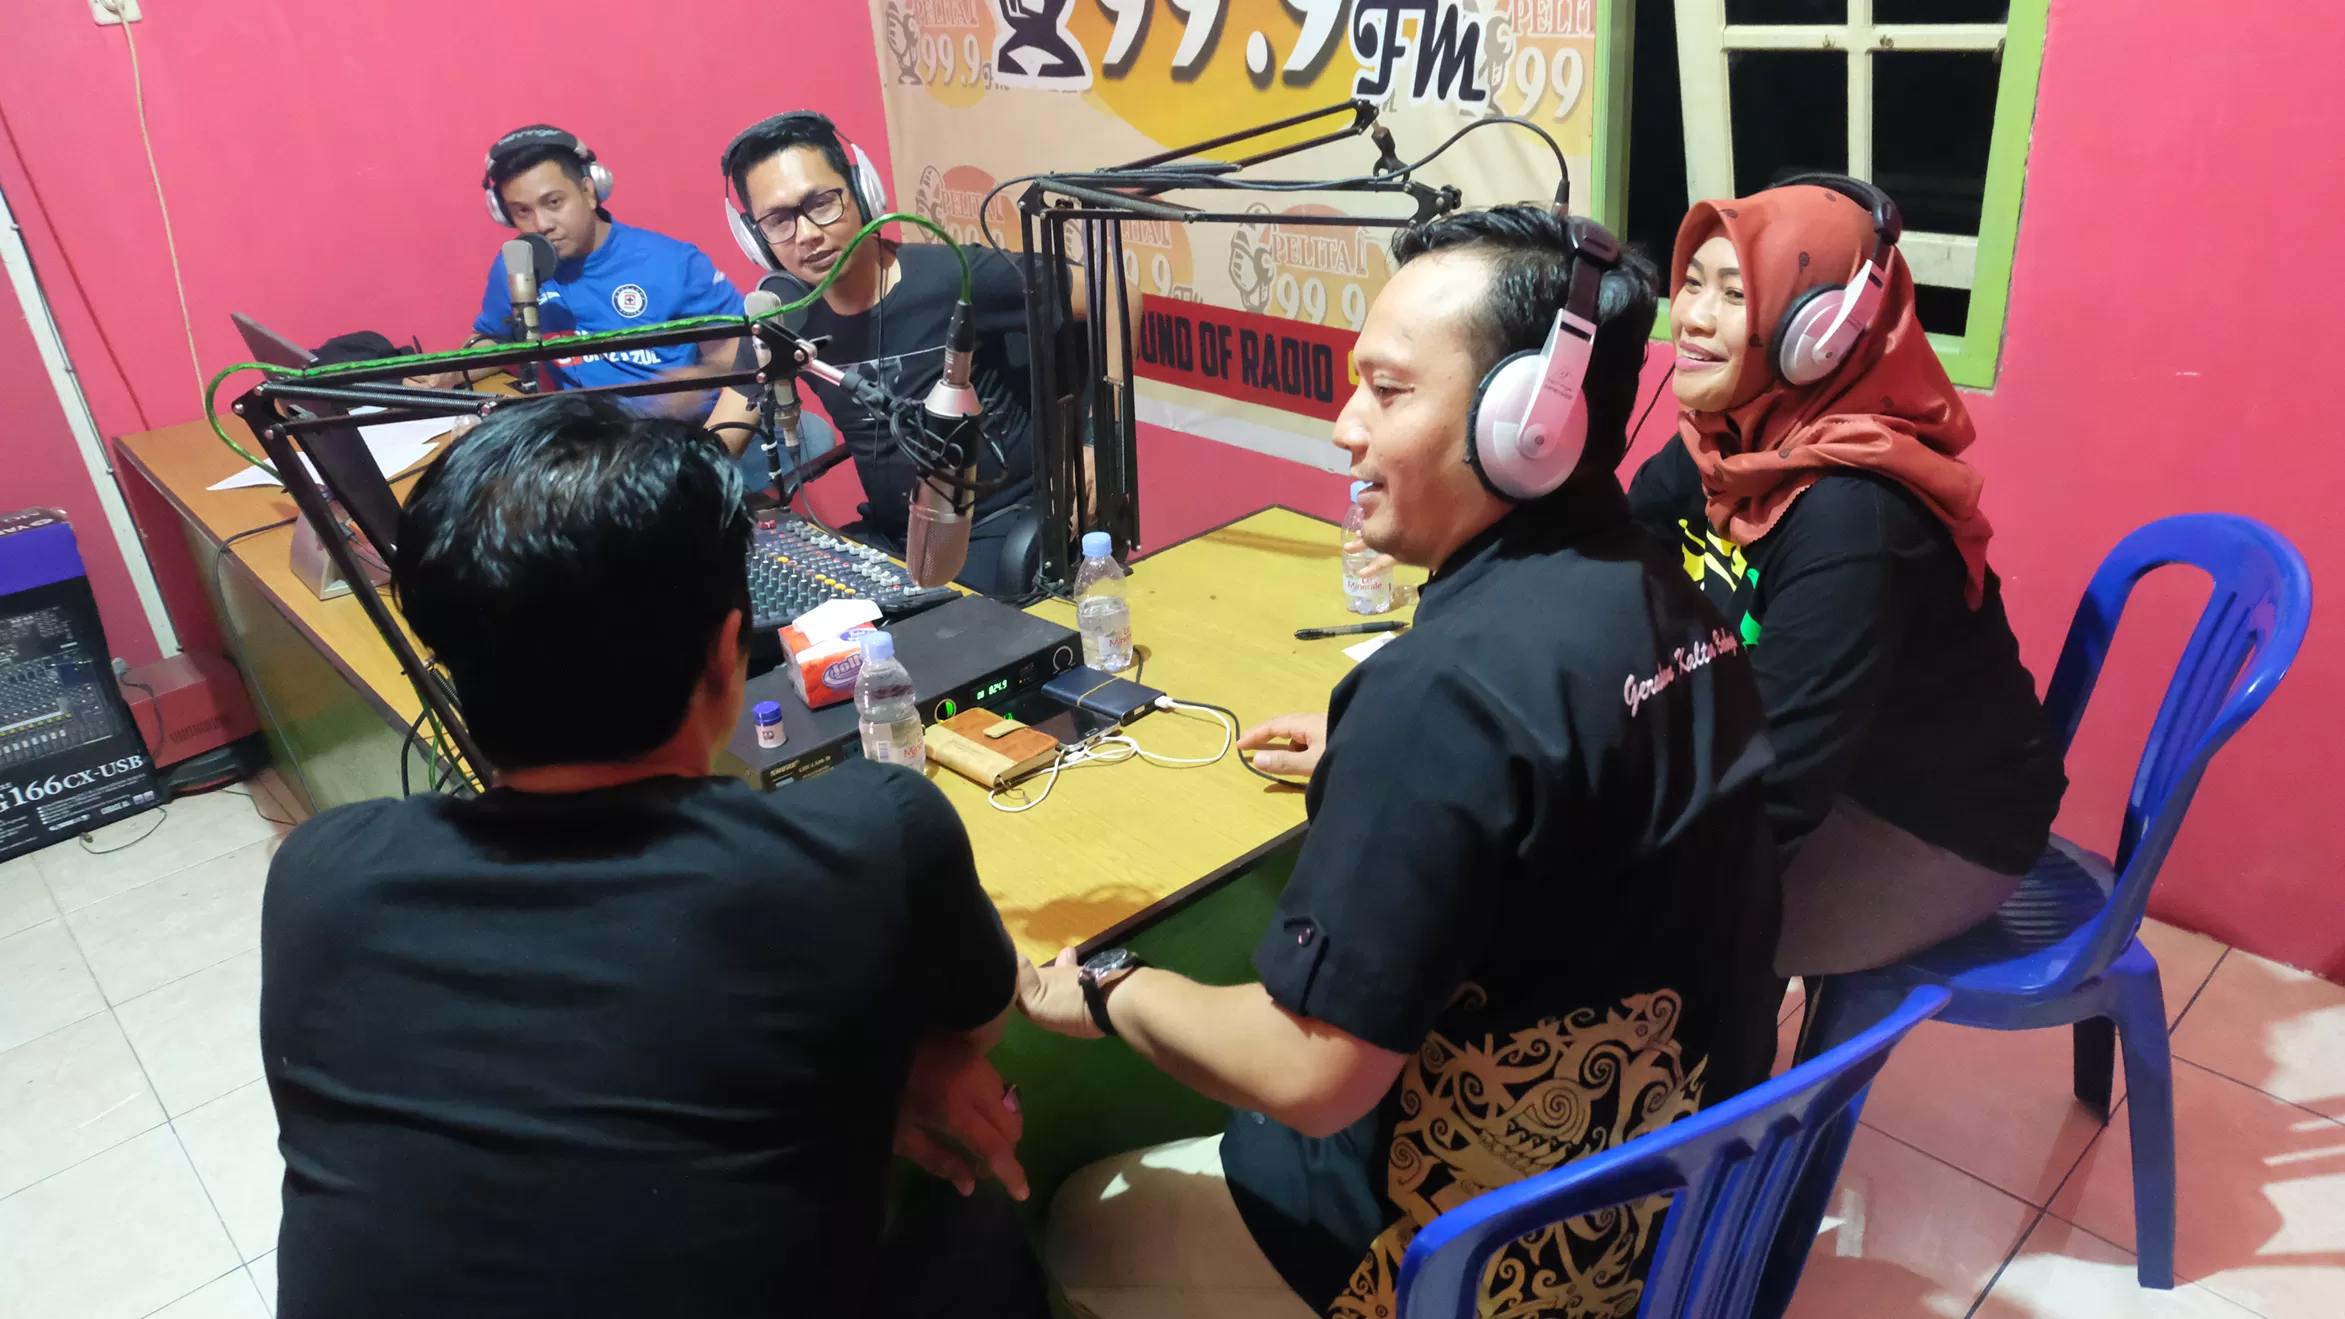 REKASUARA: Program Reka Suara dengan narasumber pengurus Komunitas GKB Kaltara, di Radio Pelita FM, Selasa (5/2).